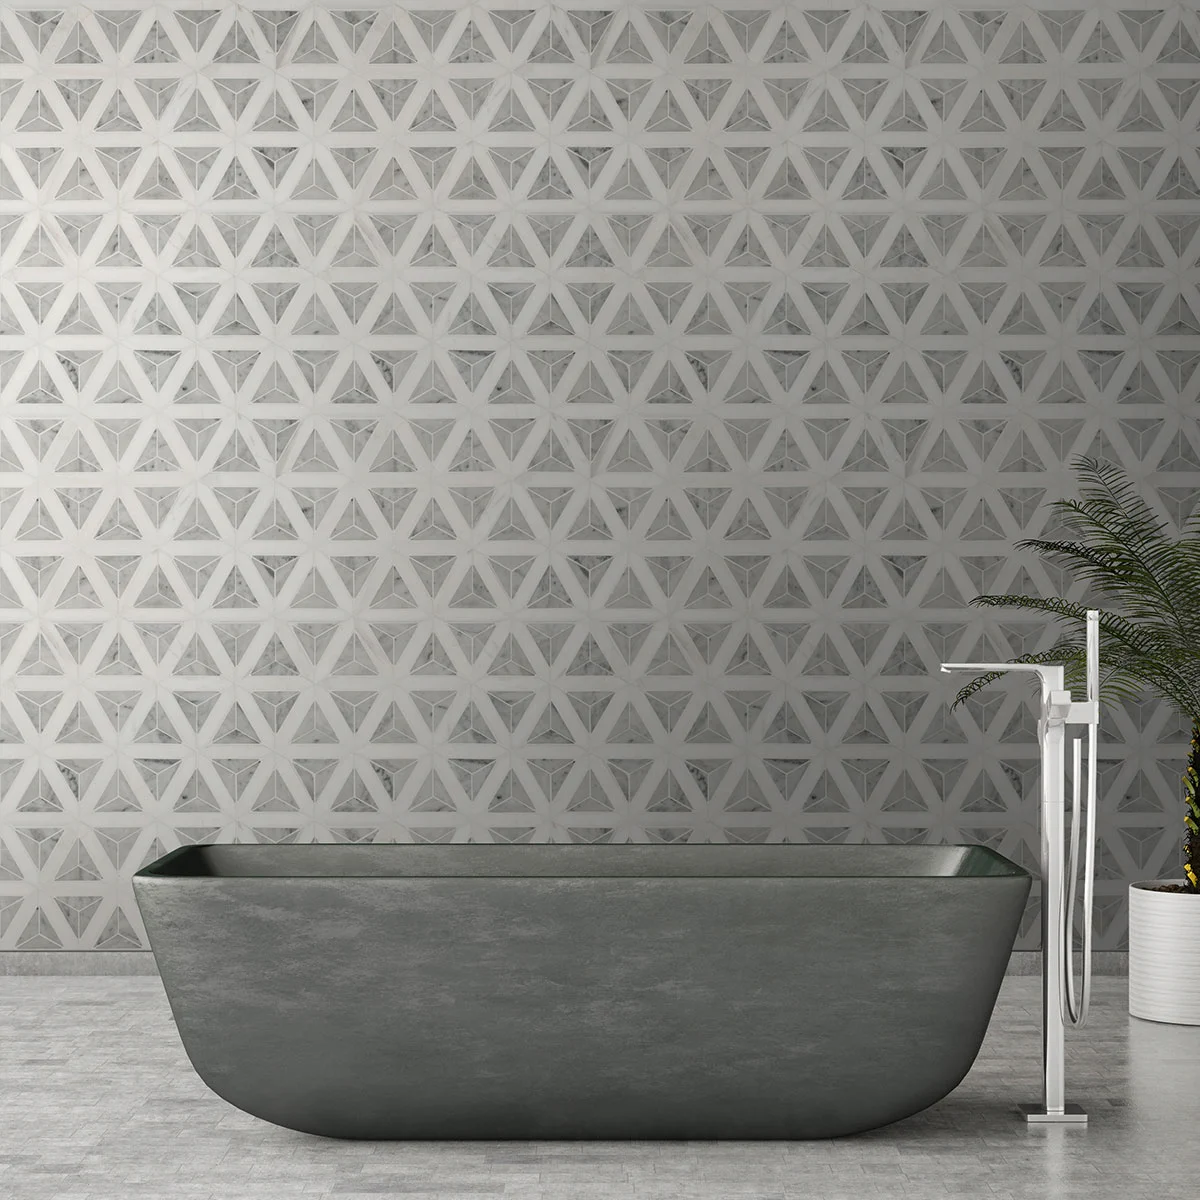 Geometric bathroom tile